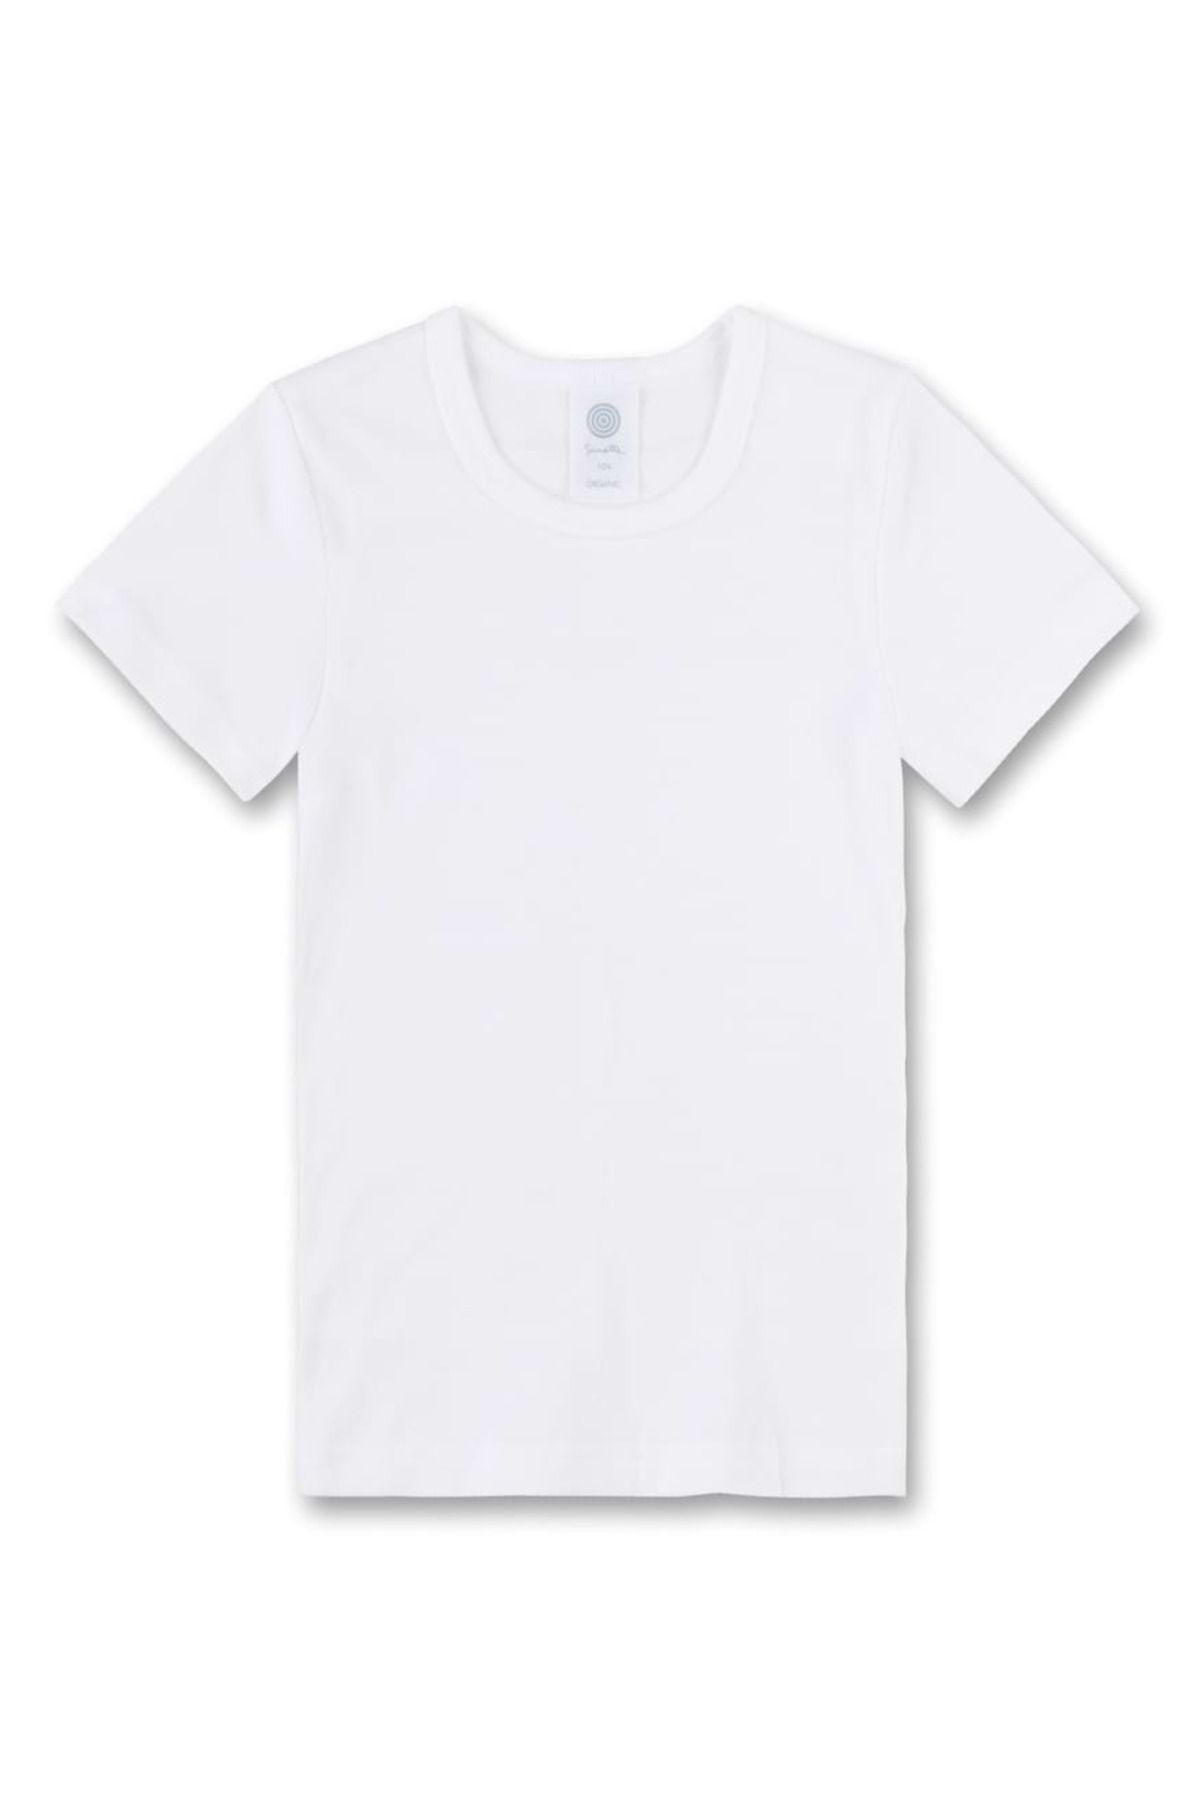 Sanetta Kinder Unterhemd - Kurzarm, Trendyol T-Shirt, - unisex, Baumwolle, einfarbig